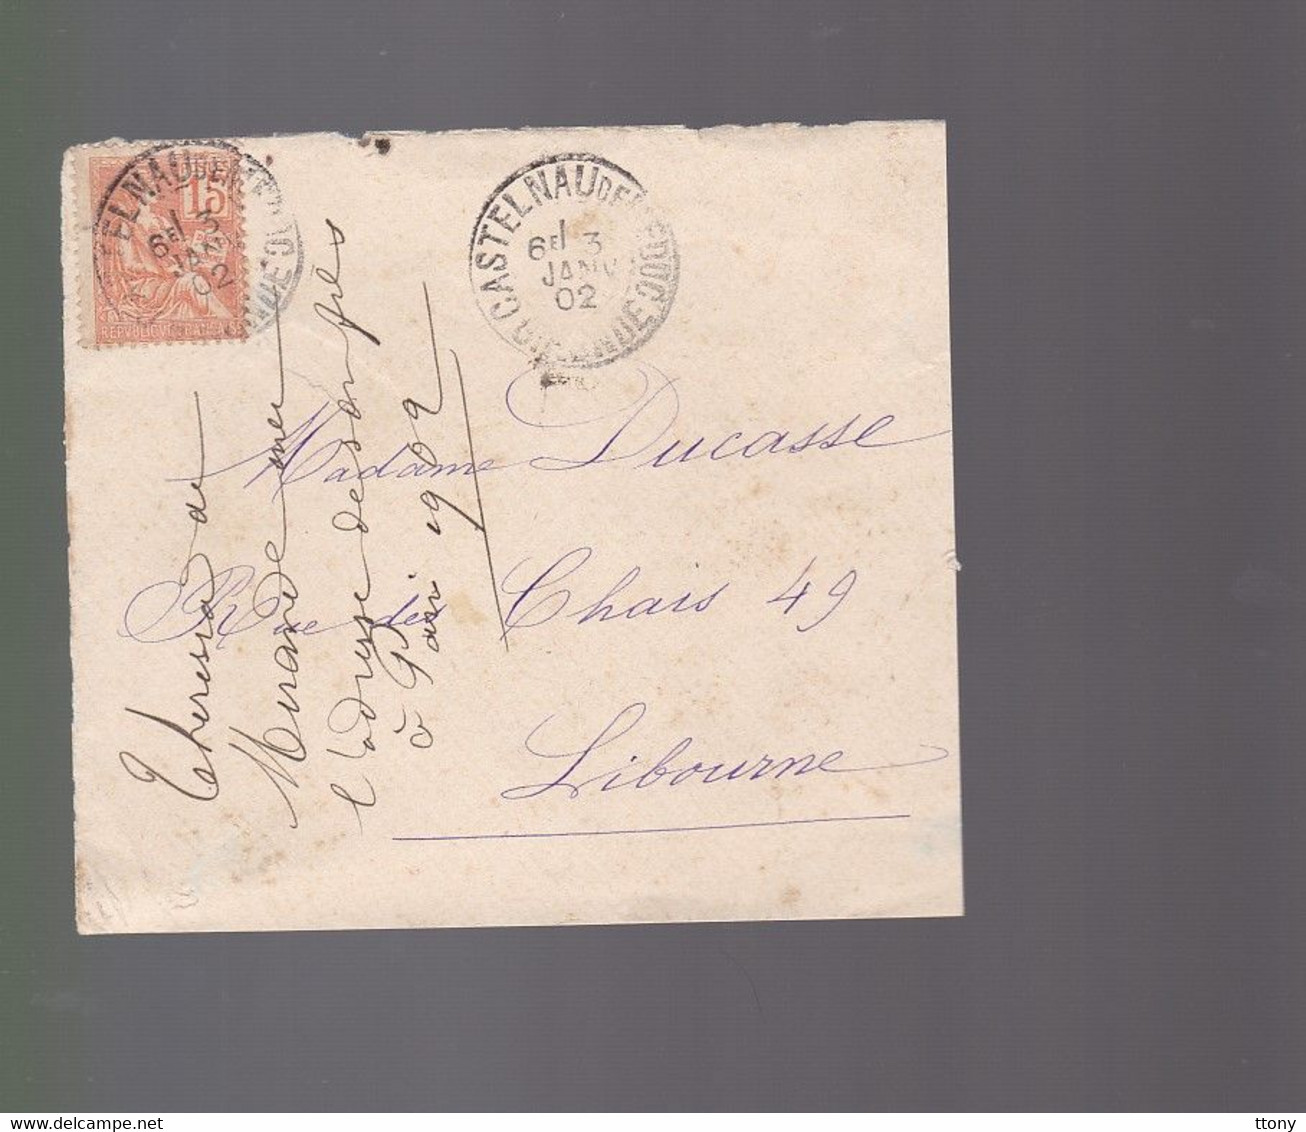 (19 enveloppes 13 timbres  type Mouchon   n°125  retouché 1902 & 6 timbres  n° 117    sur devant enveloppe .cover